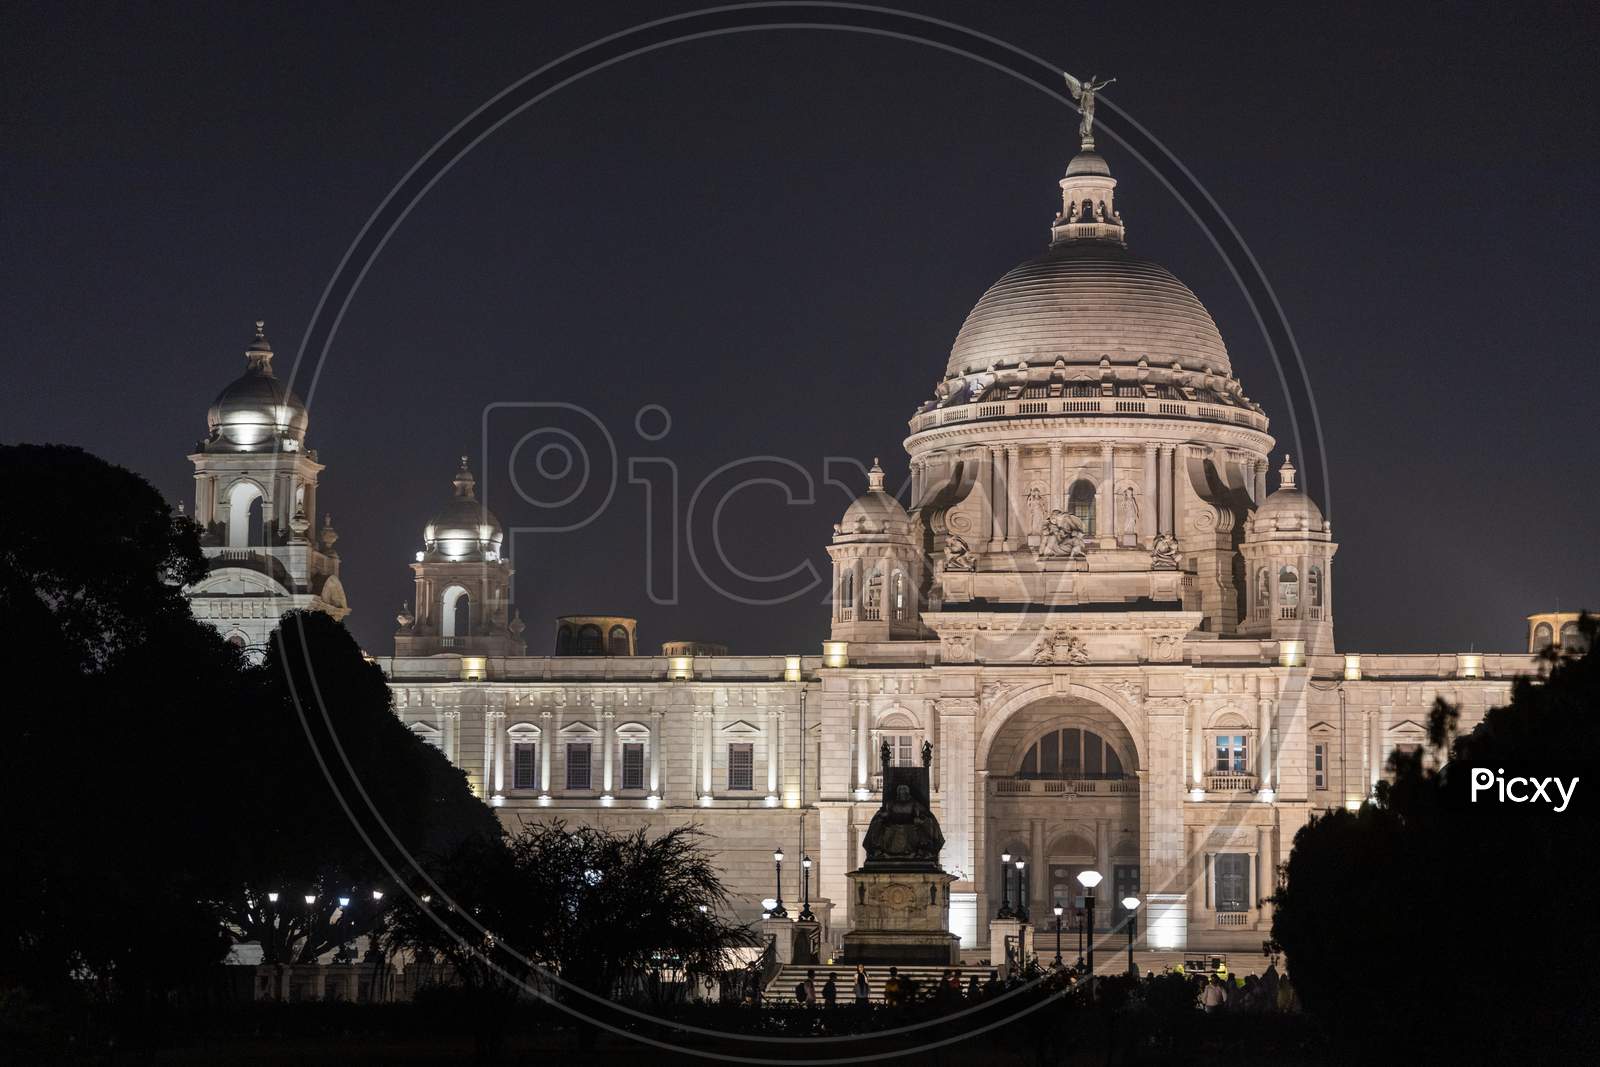 Night View of Victoria Memorial, Kolkata